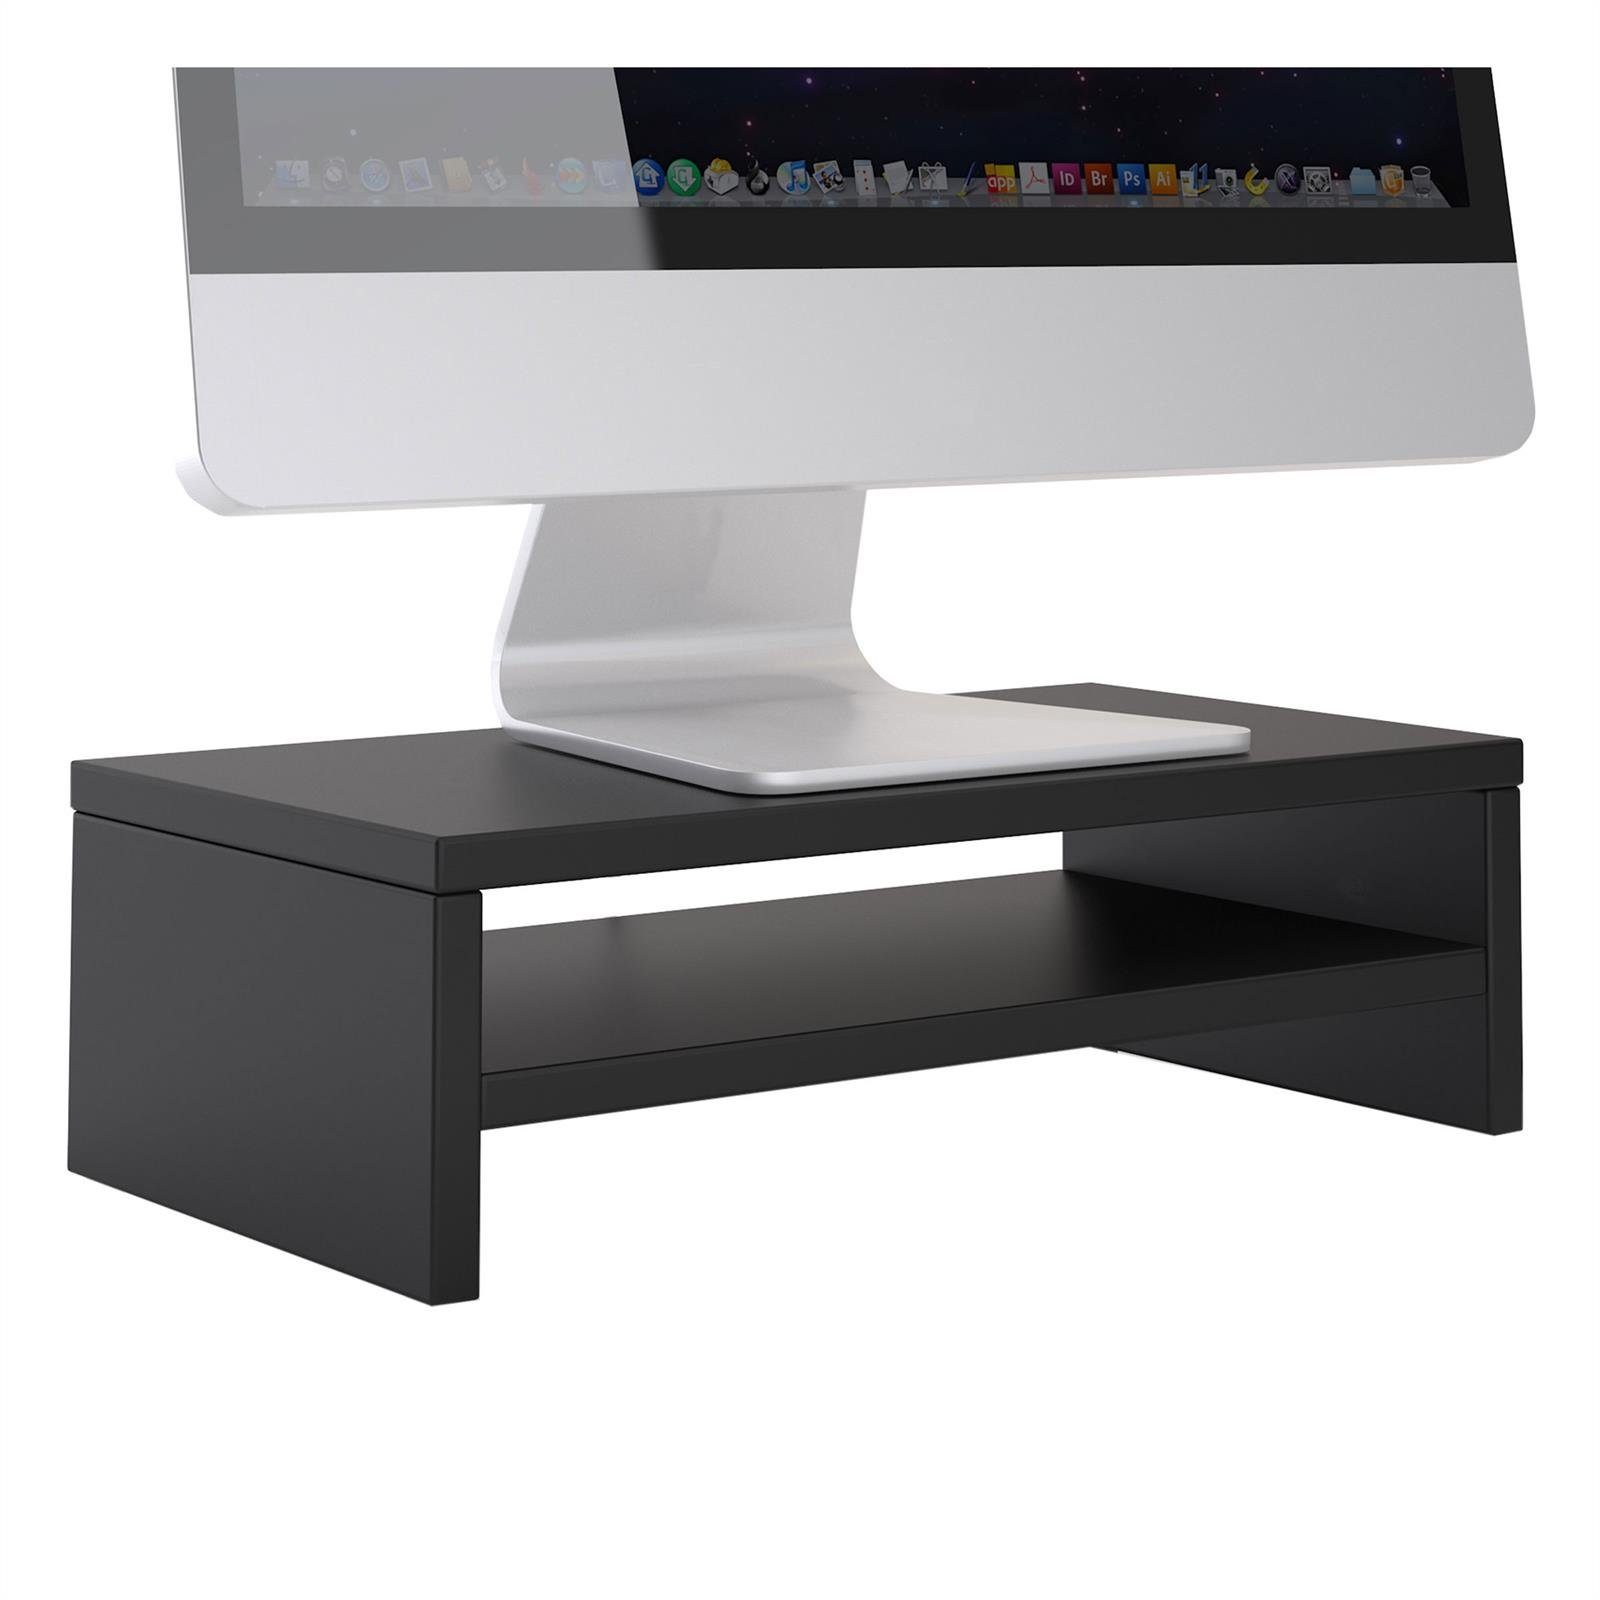 CARO-Möbel Schreibtischaufsatz SUBIDA, Bildschirmaufsatz Monitorständer Monitorerhöhung inkl. Ablagefach